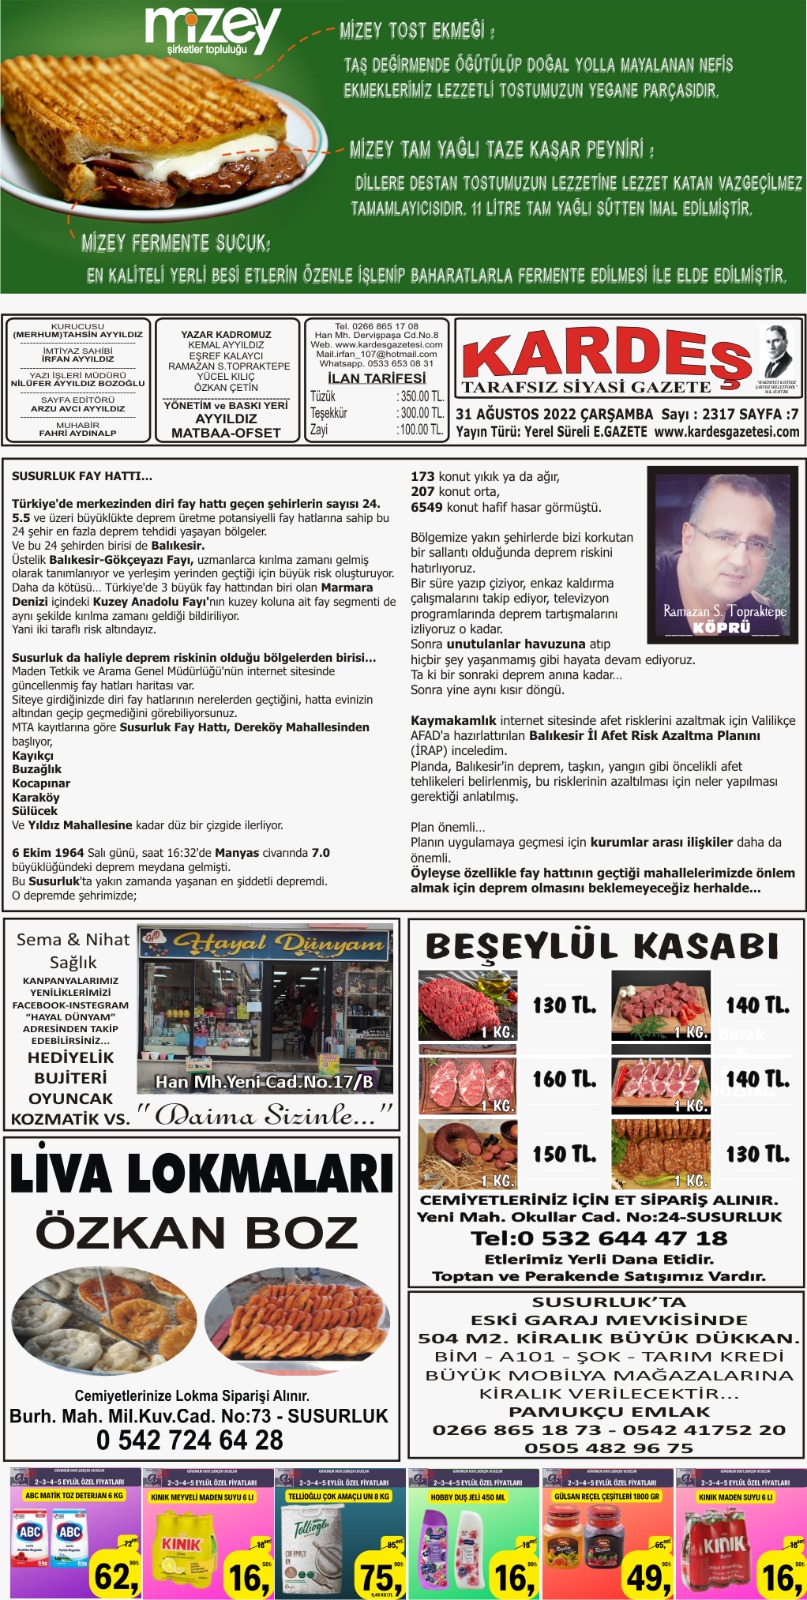 31.08.2022 Tarihli Kardeş Gazetesi Sayfa 7